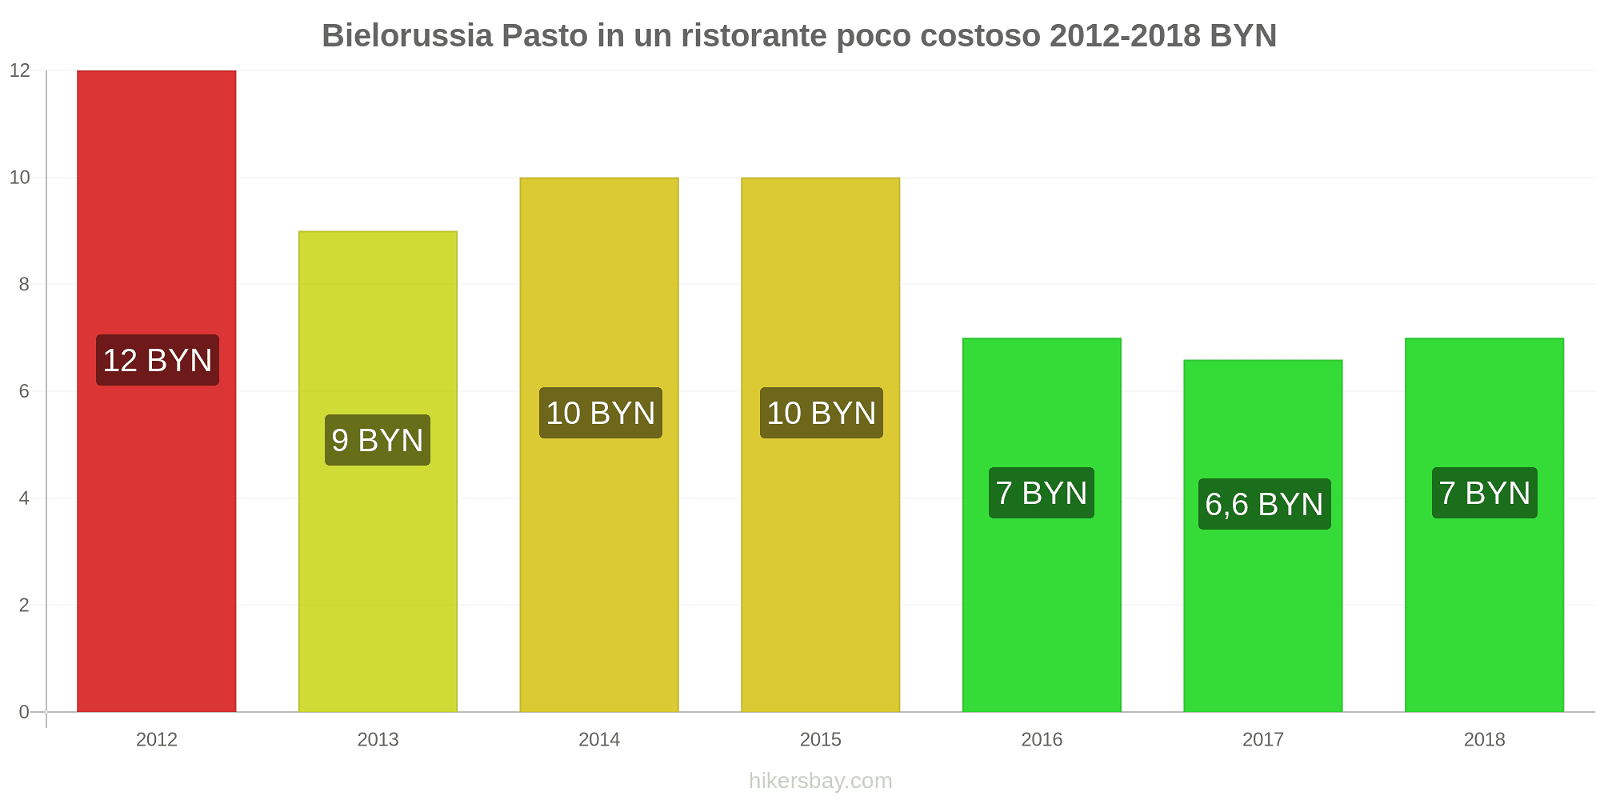 Bielorussia cambi di prezzo Pasto in un ristorante economico hikersbay.com